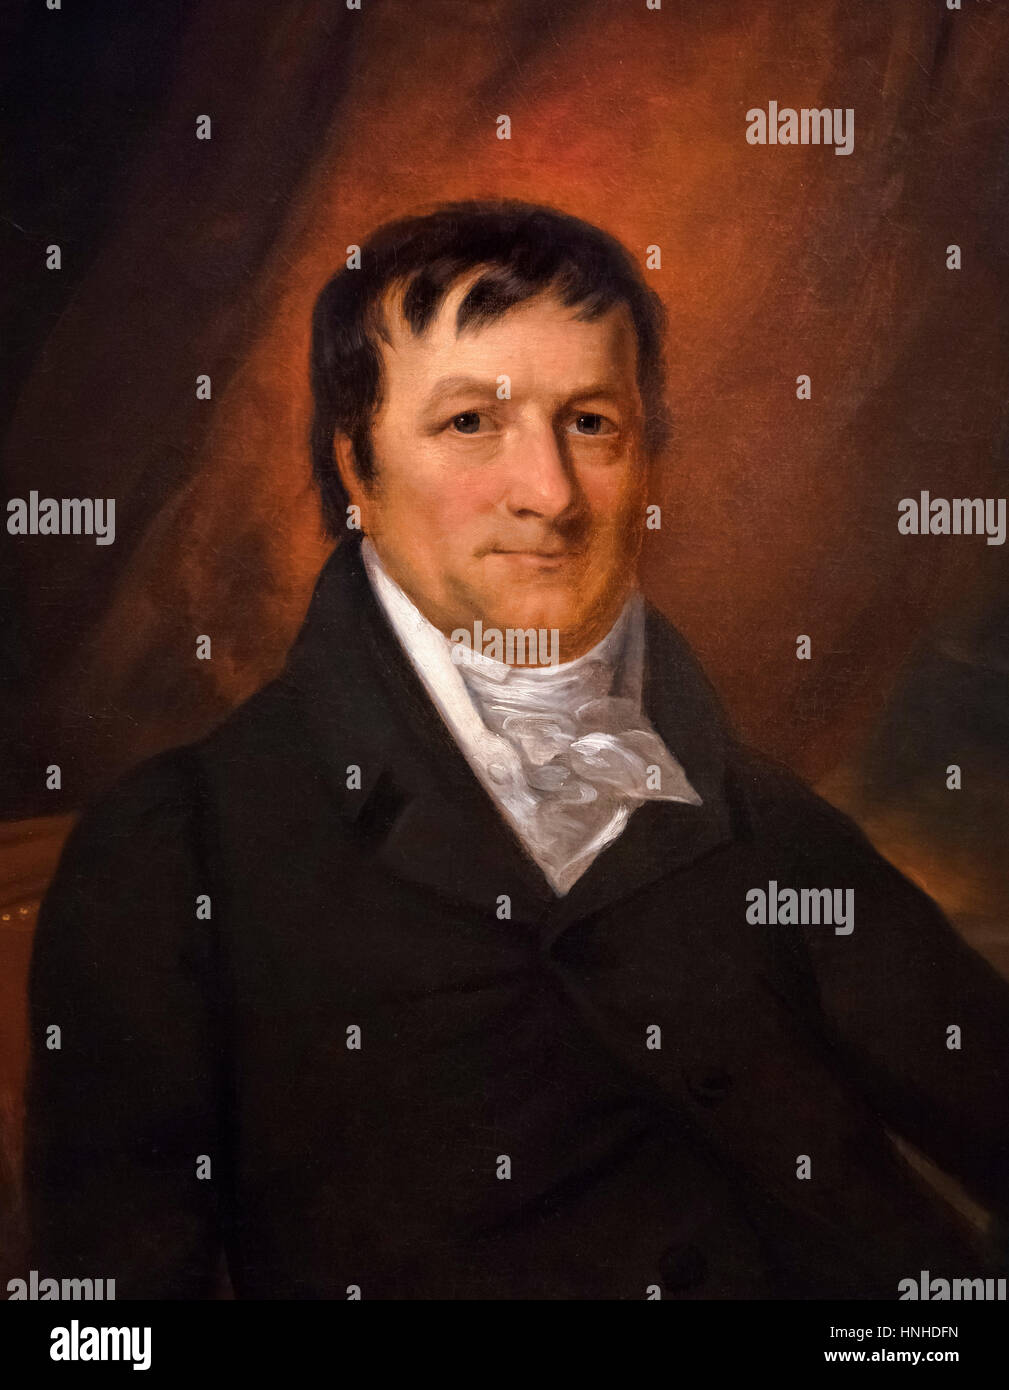 John Jacob Astor (1763-1848), l'homme allemand, qui fut le premier multi-millionnaire en Amérique. Portrait par John Wesley Jarvis, huile sur toile, c.1825. Banque D'Images